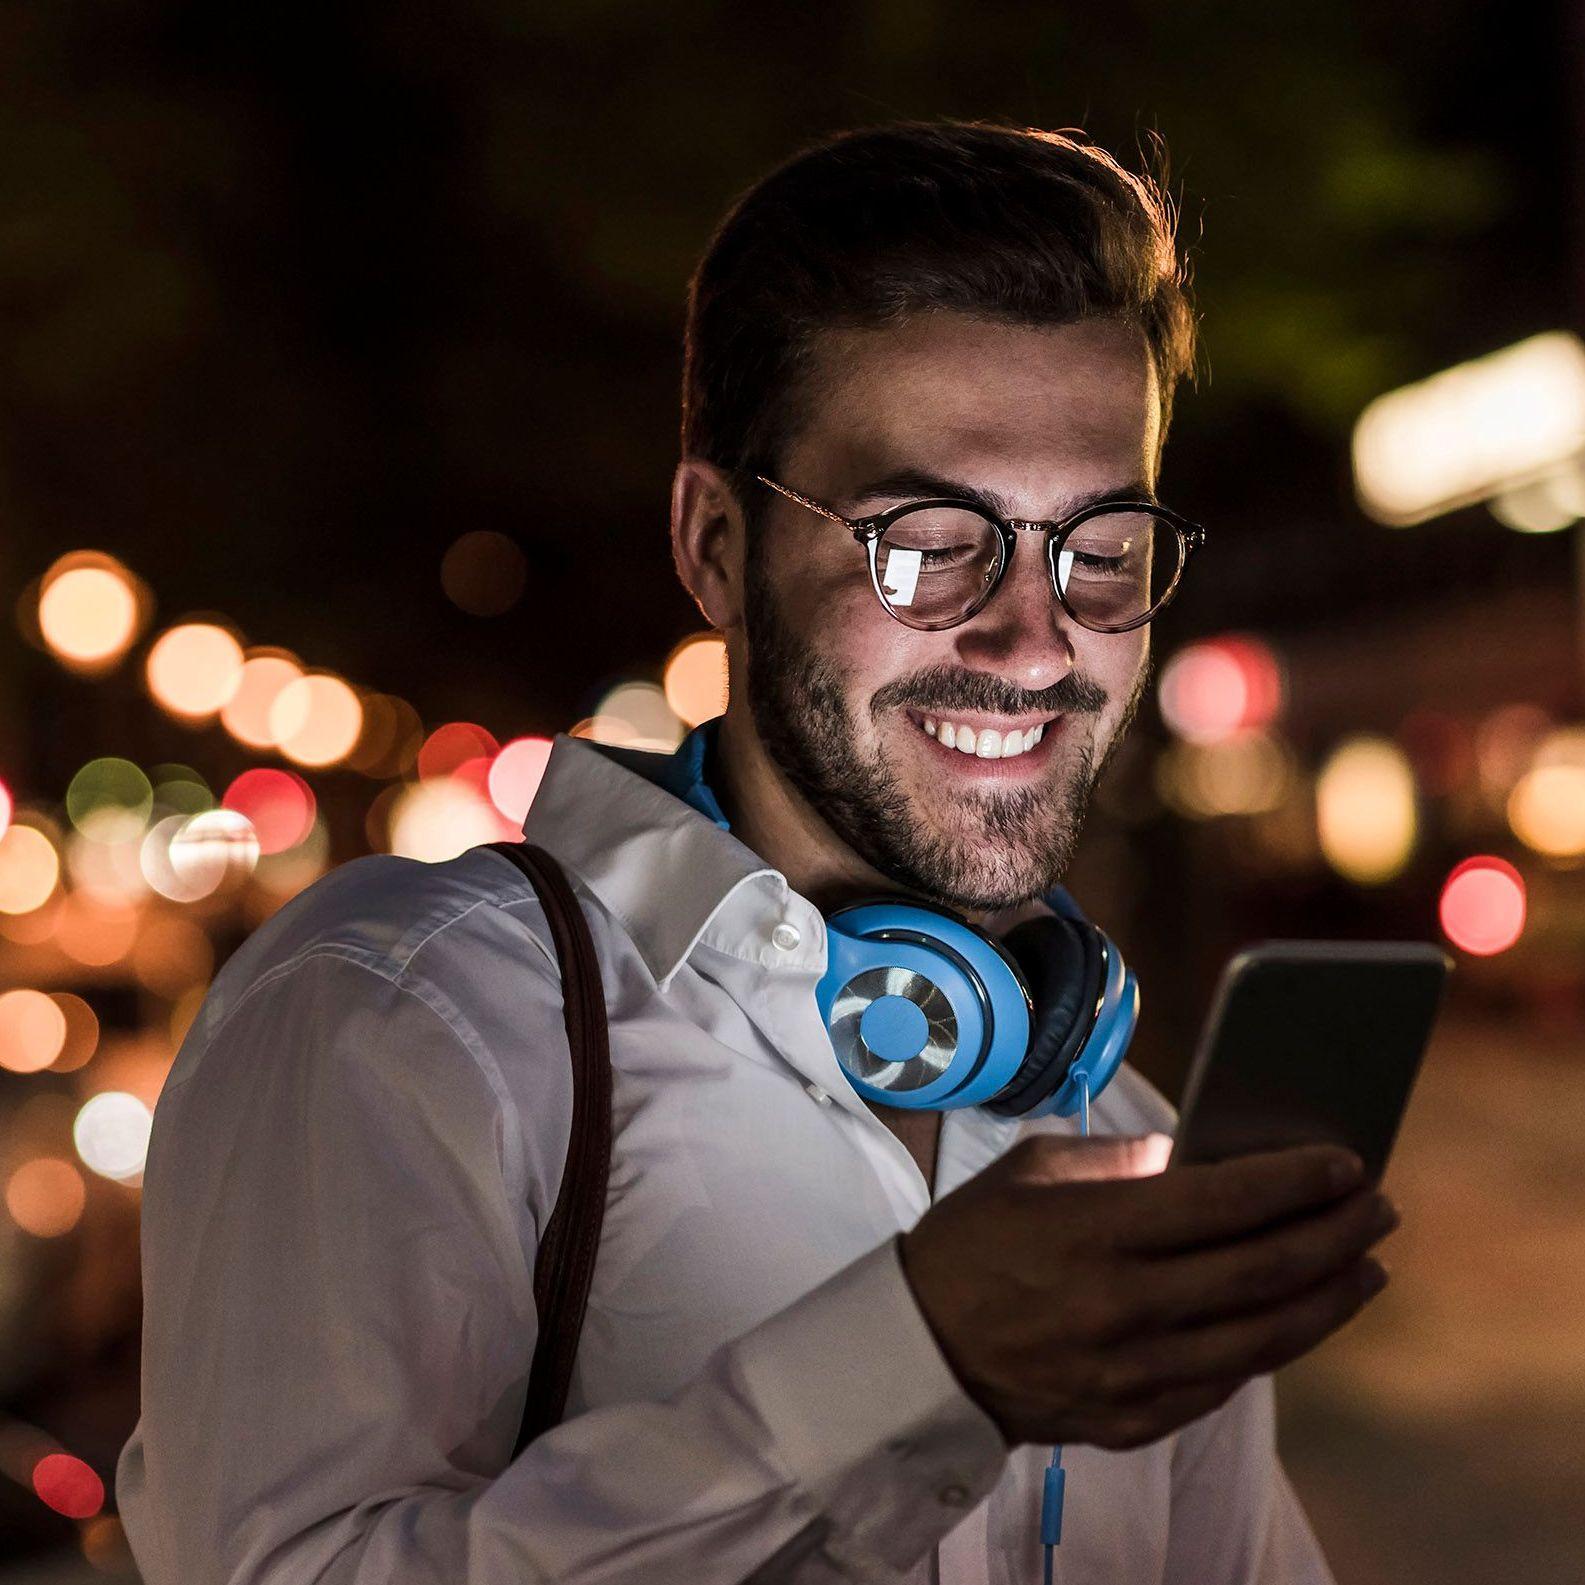 Ein junger Mann im weißen Hemd und türkisen Kopfhörern um den Hals, schaut glücklich auf den Display seines Smartphones. Es ist Abend und sein Gesicht wird vom Displaylicht angeleuchtet.